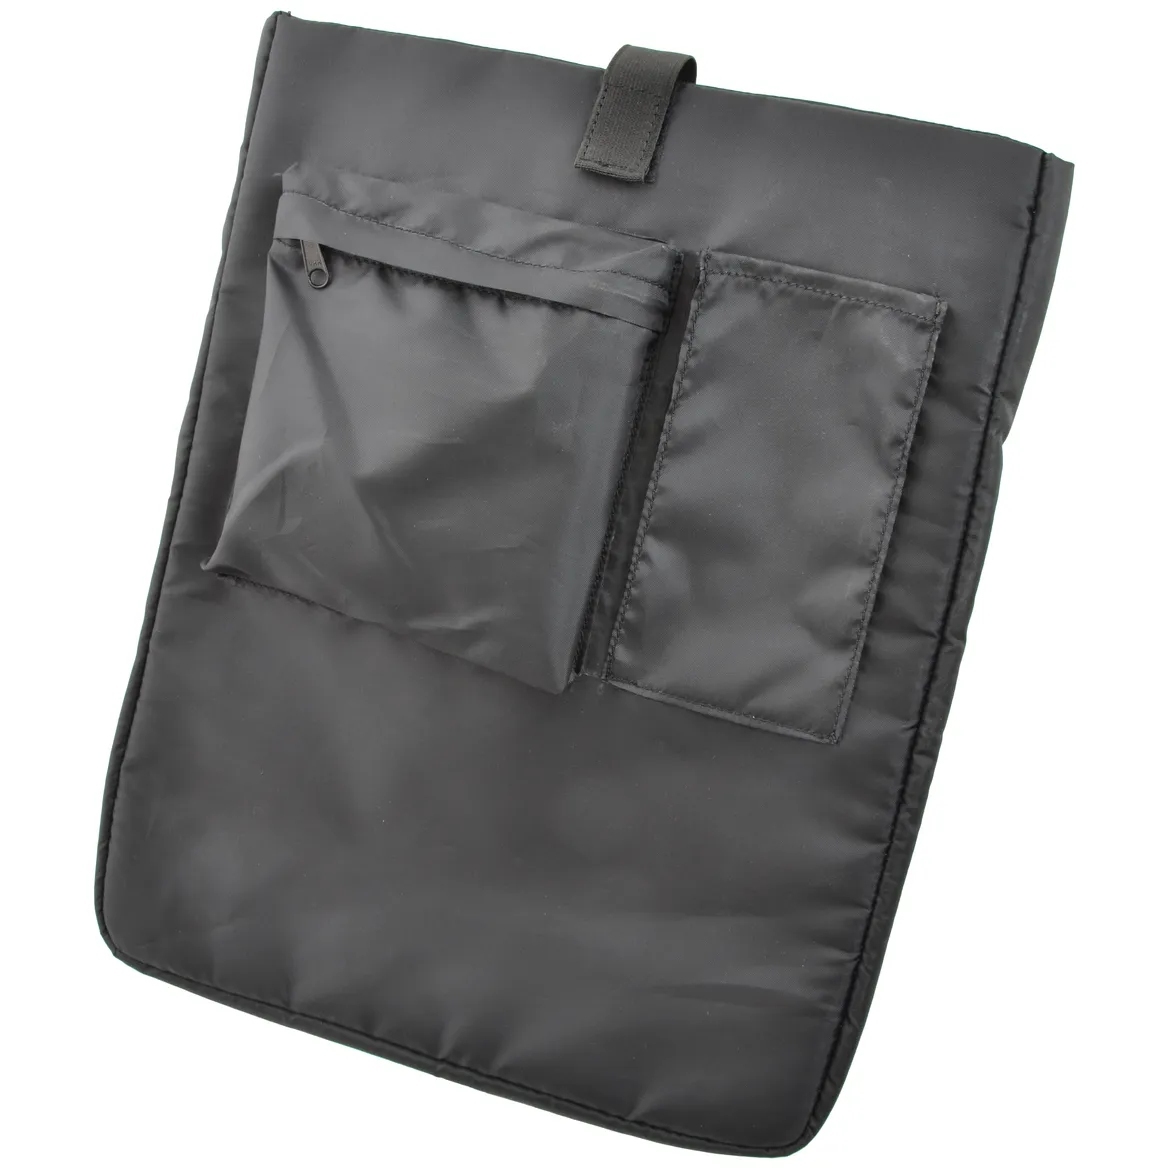 Produktbild von AGU Laptop-Hülle - Taschenzubehör - 3L - schwarz